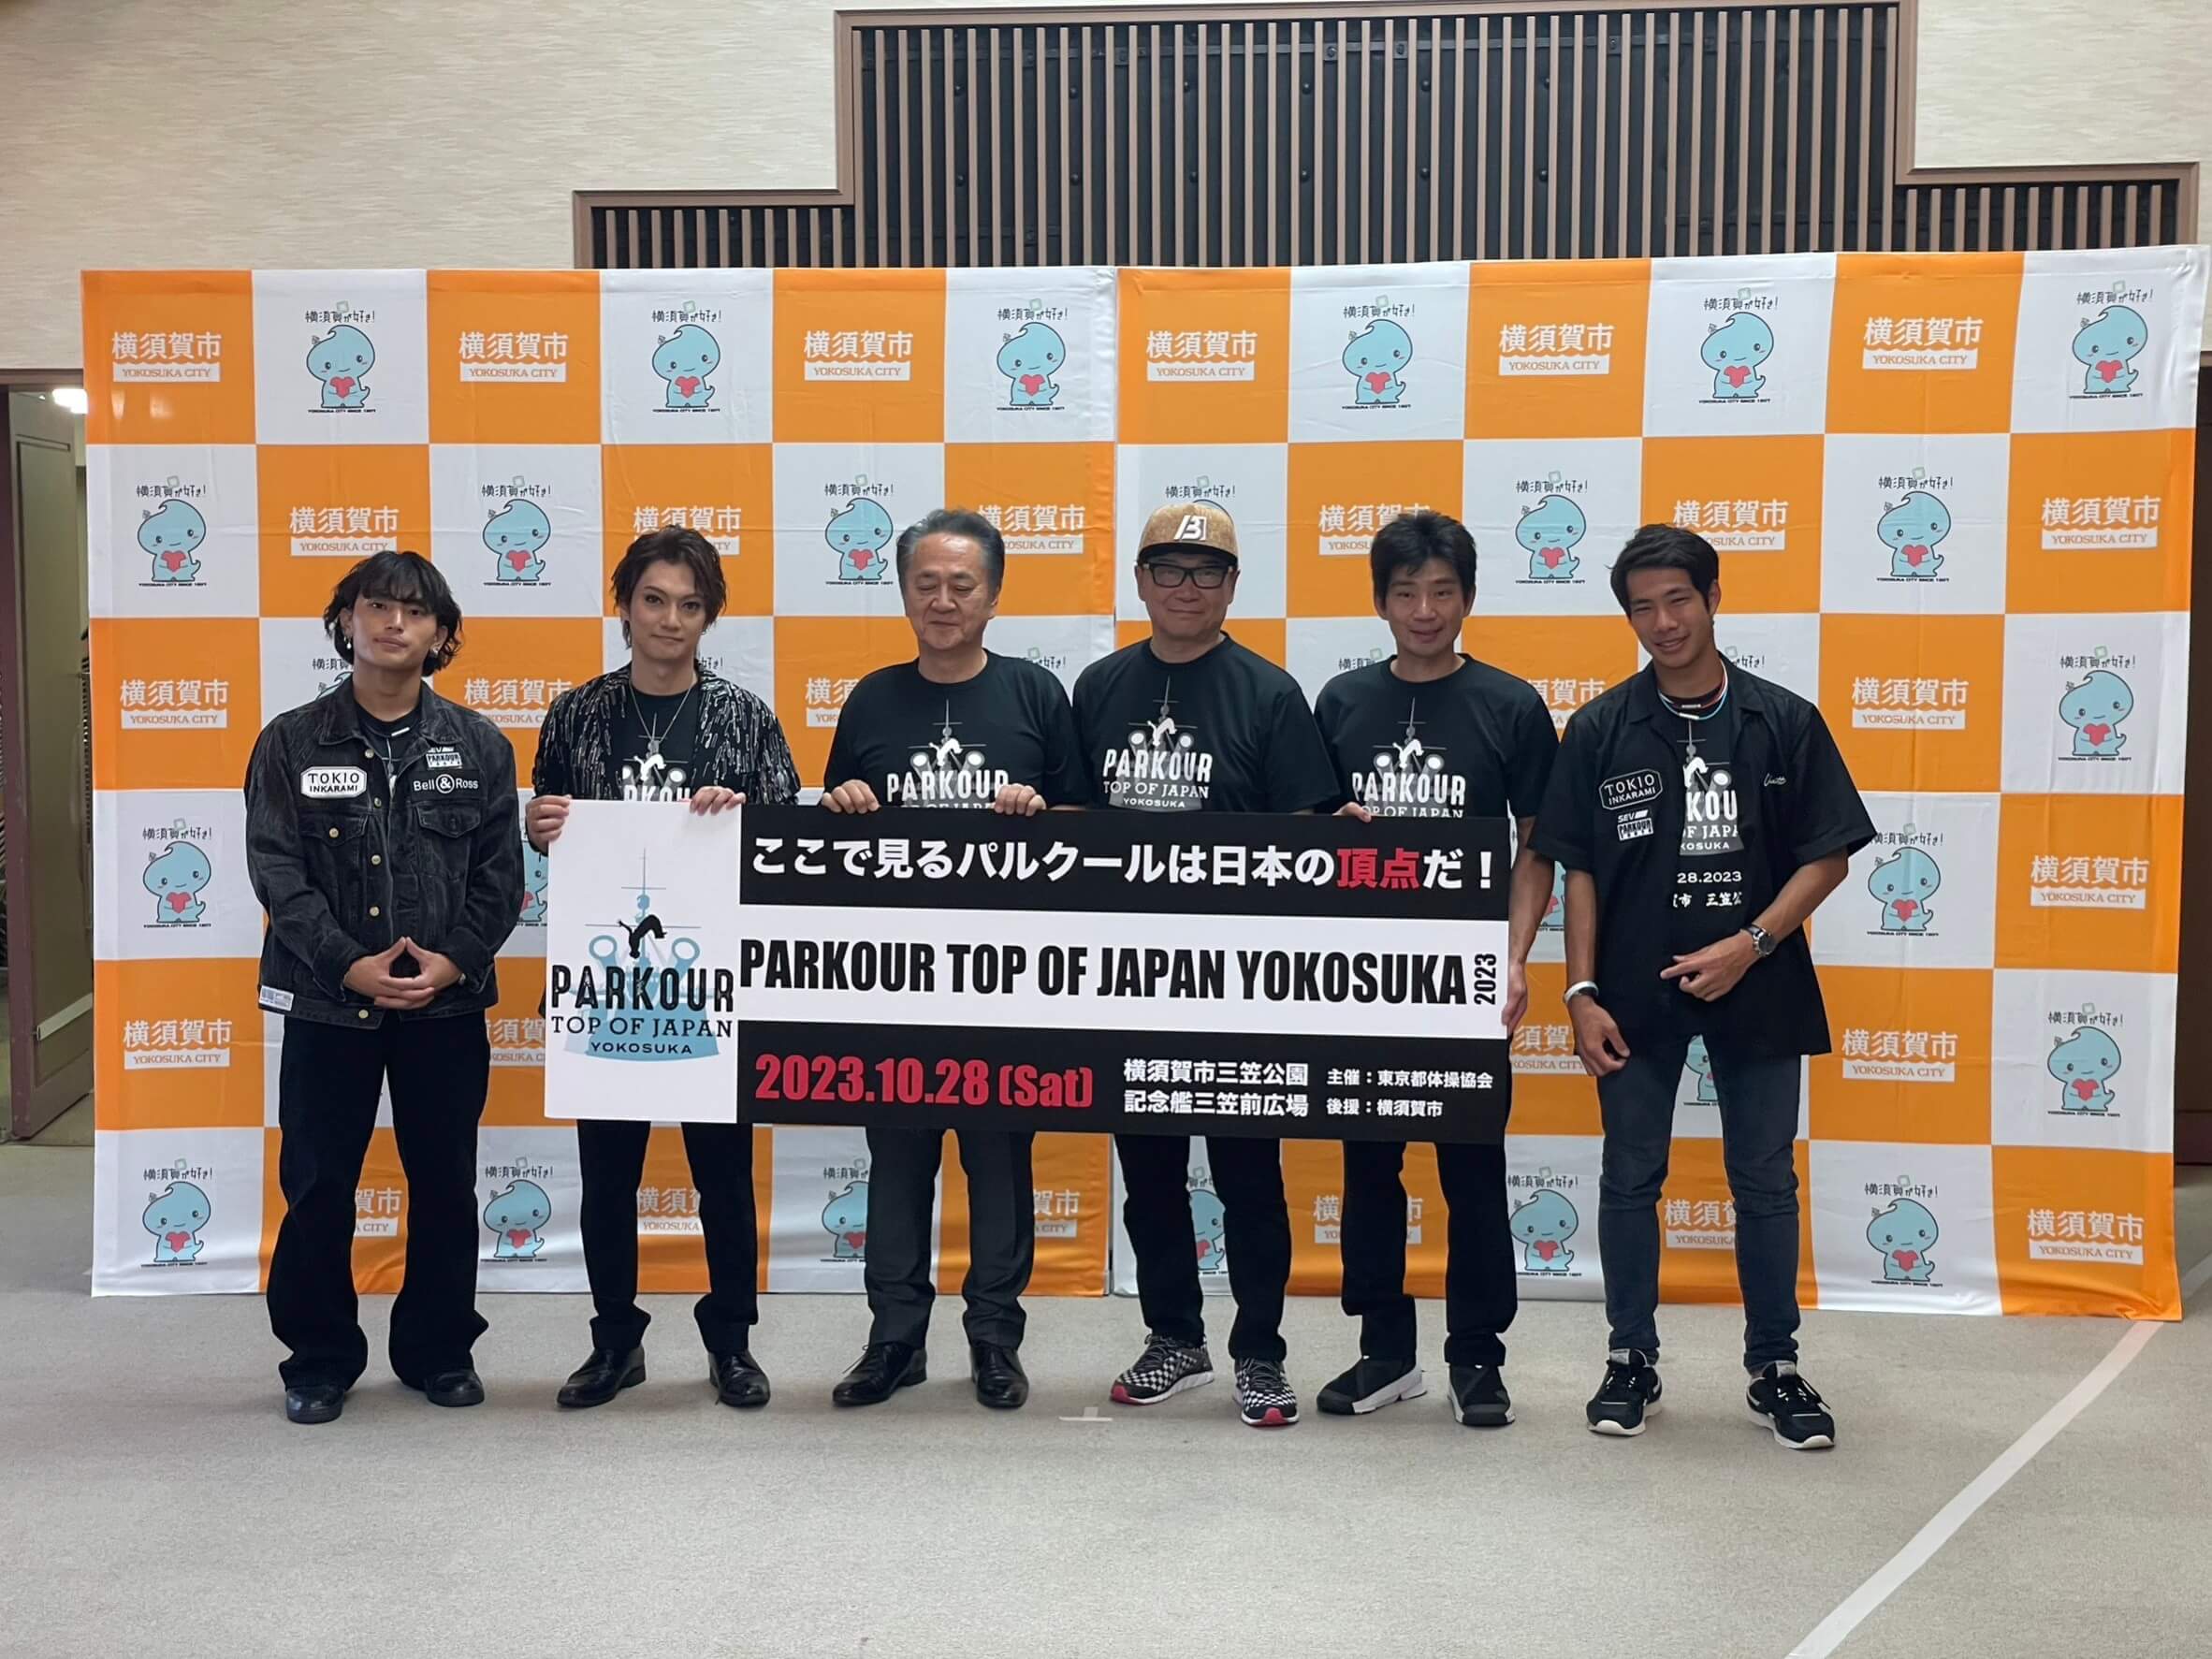 【速報・記者会見レポート】横須賀市、初となるパルクール大会「PARKOUR TOP OF JAPAN YOKOSUKA」の詳細とビジョン